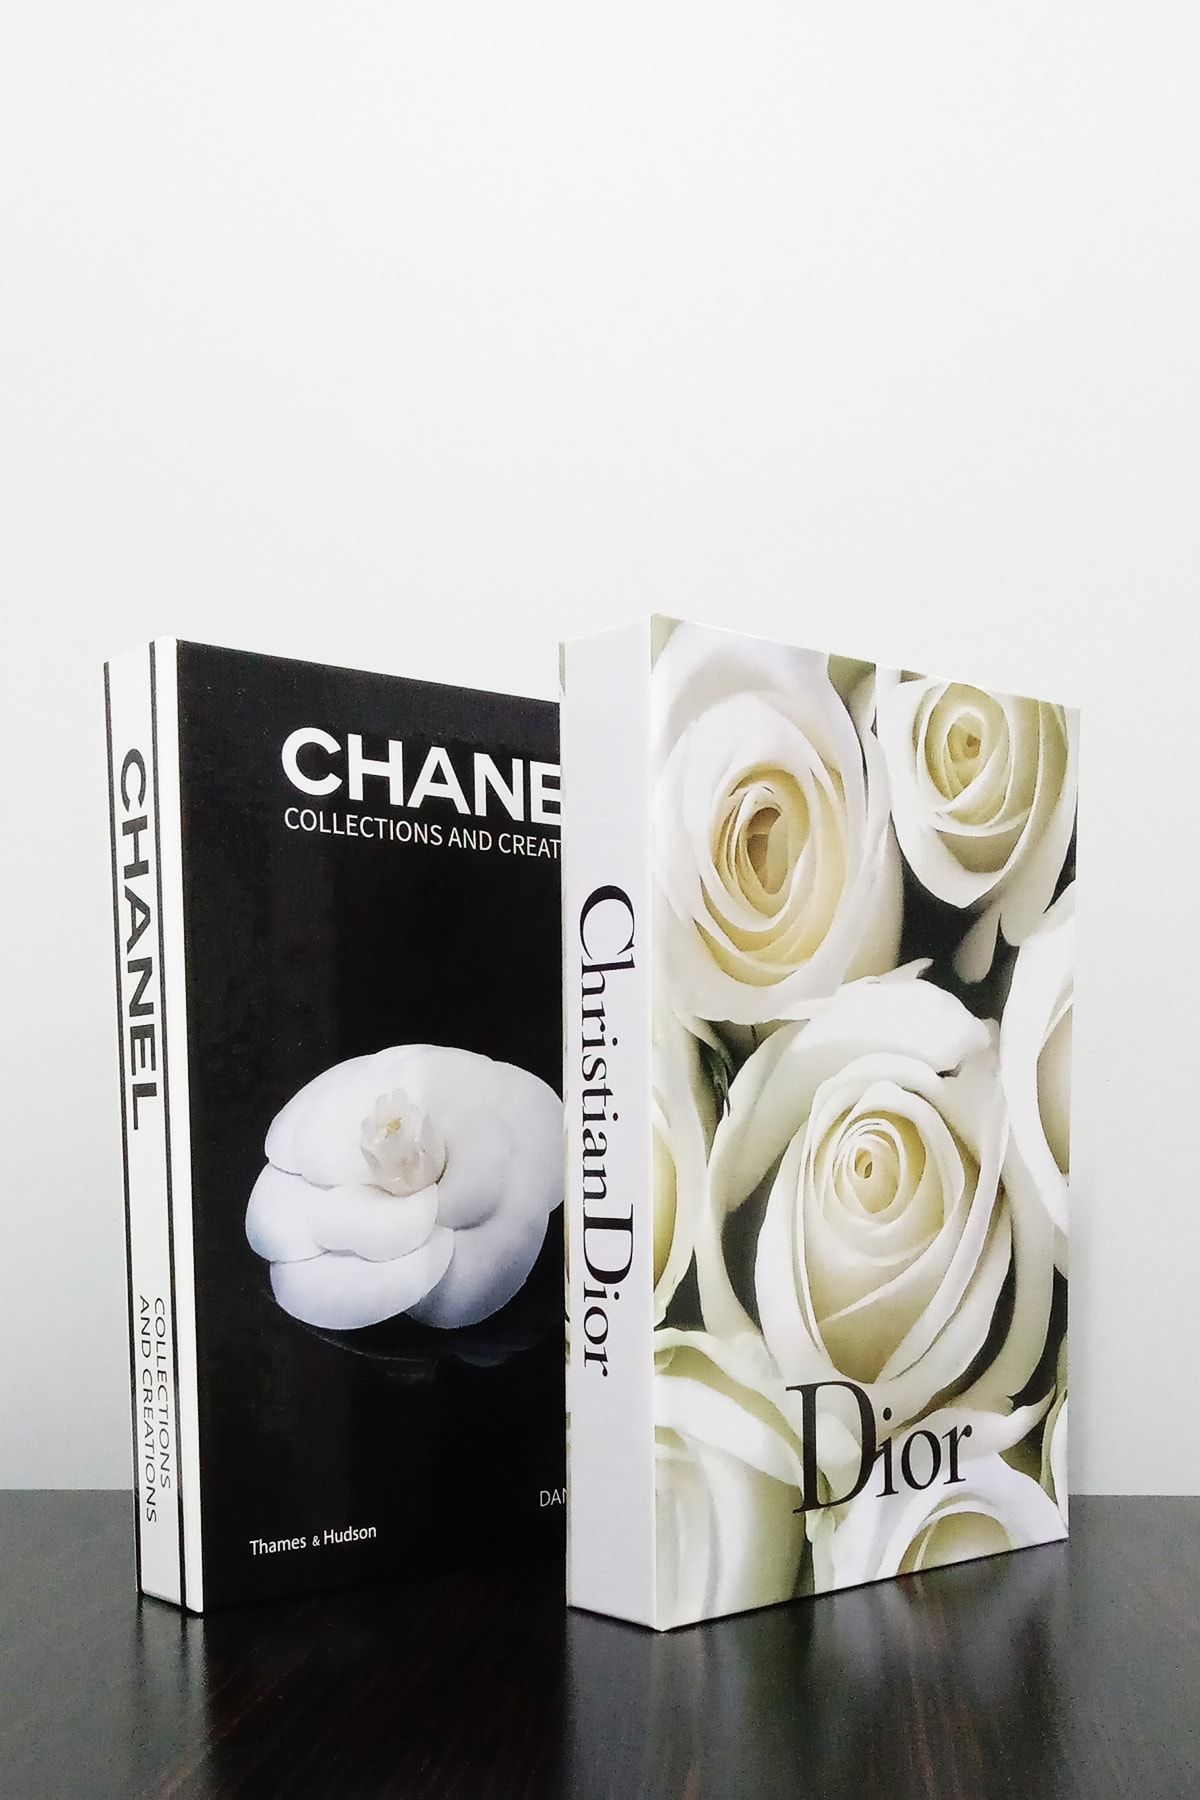 BayCazip 2'li Dekoratif Kitap Kutu Görünümlü Chanel Siyah Gül & Dior Beyaz Gül Temalı